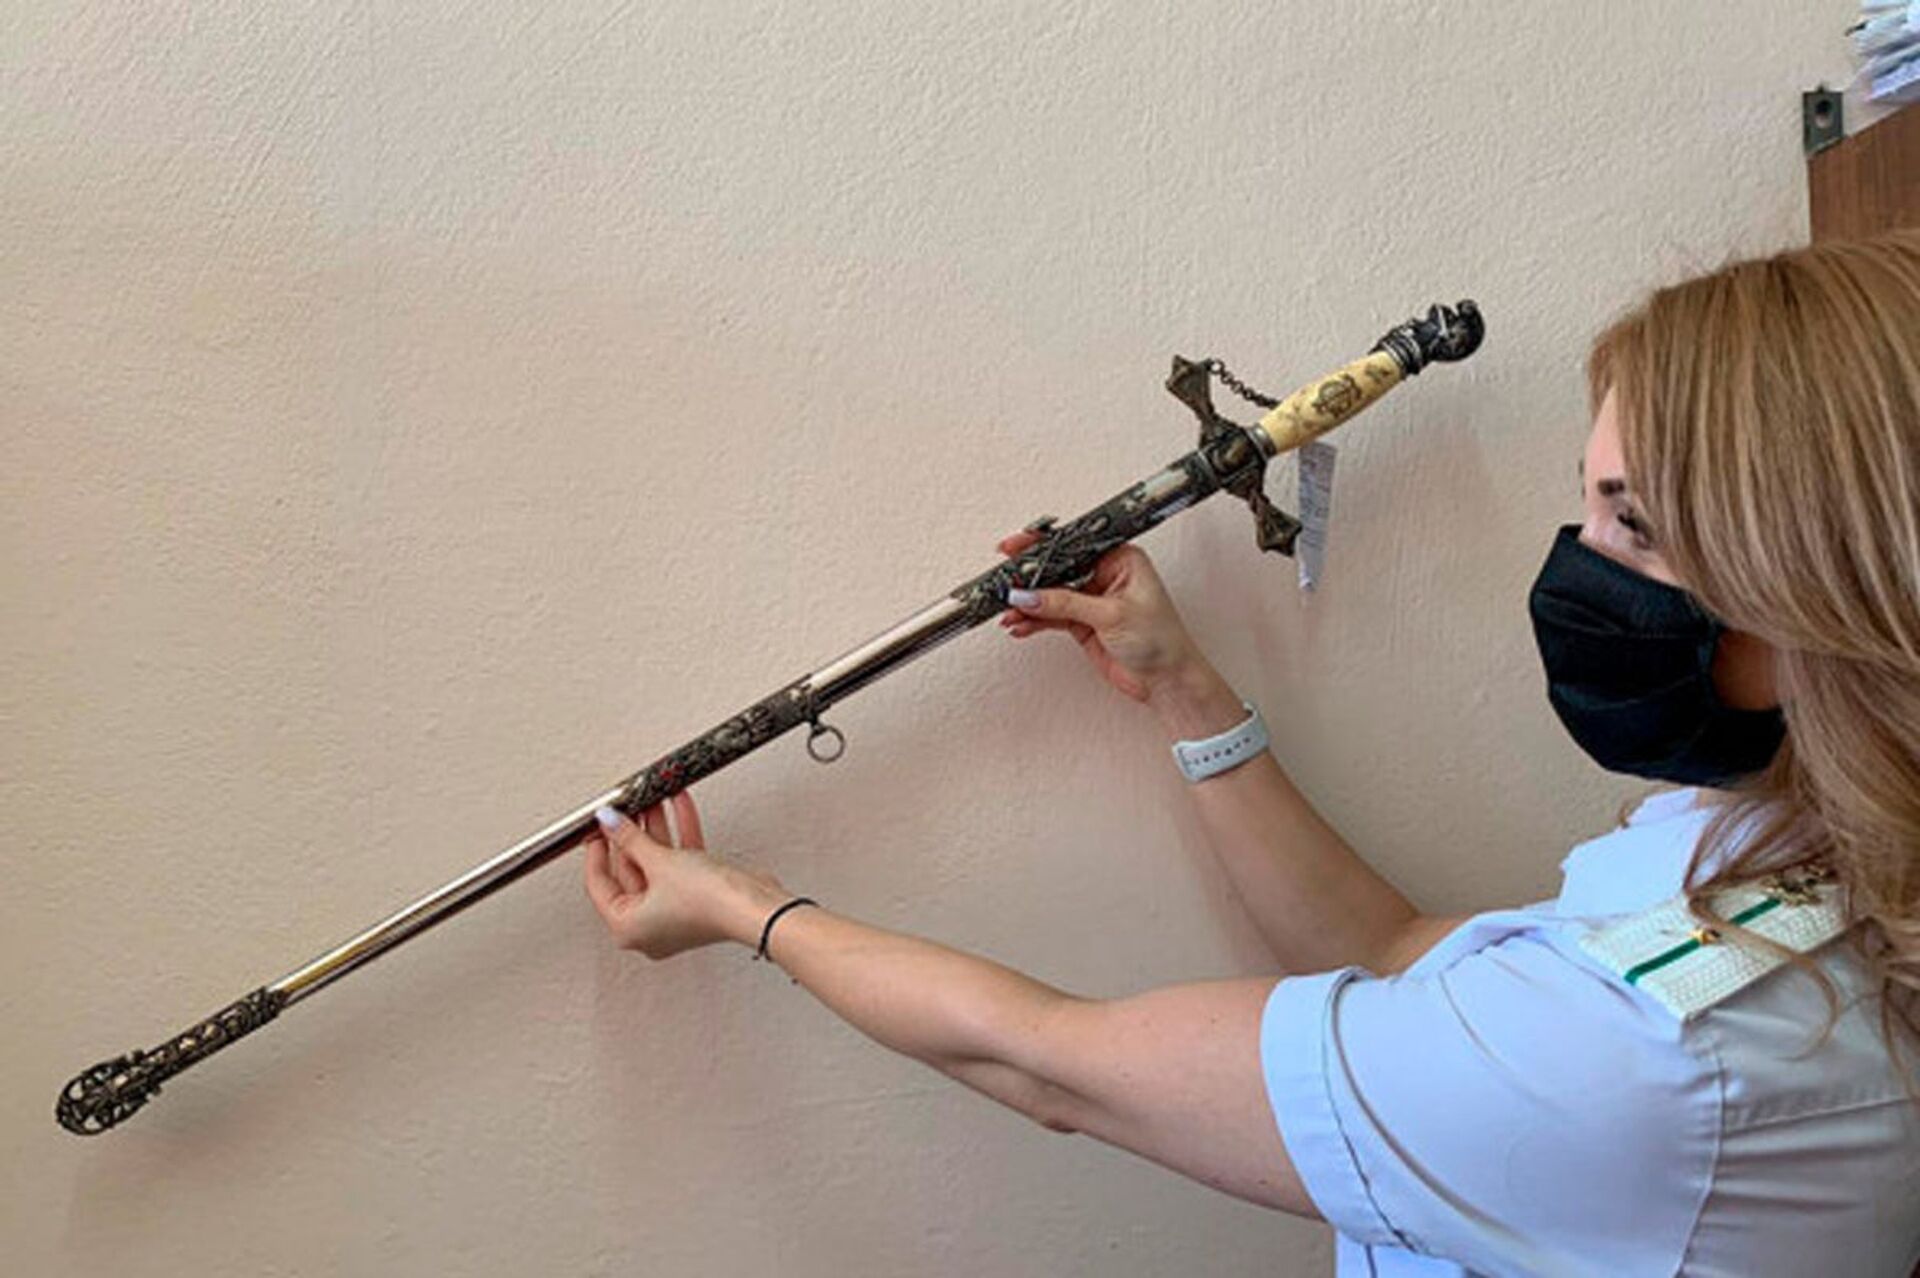 Ritualni mač templara, koji je policija konfiskovala u Dagestanu - Sputnik Srbija, 1920, 13.07.2021